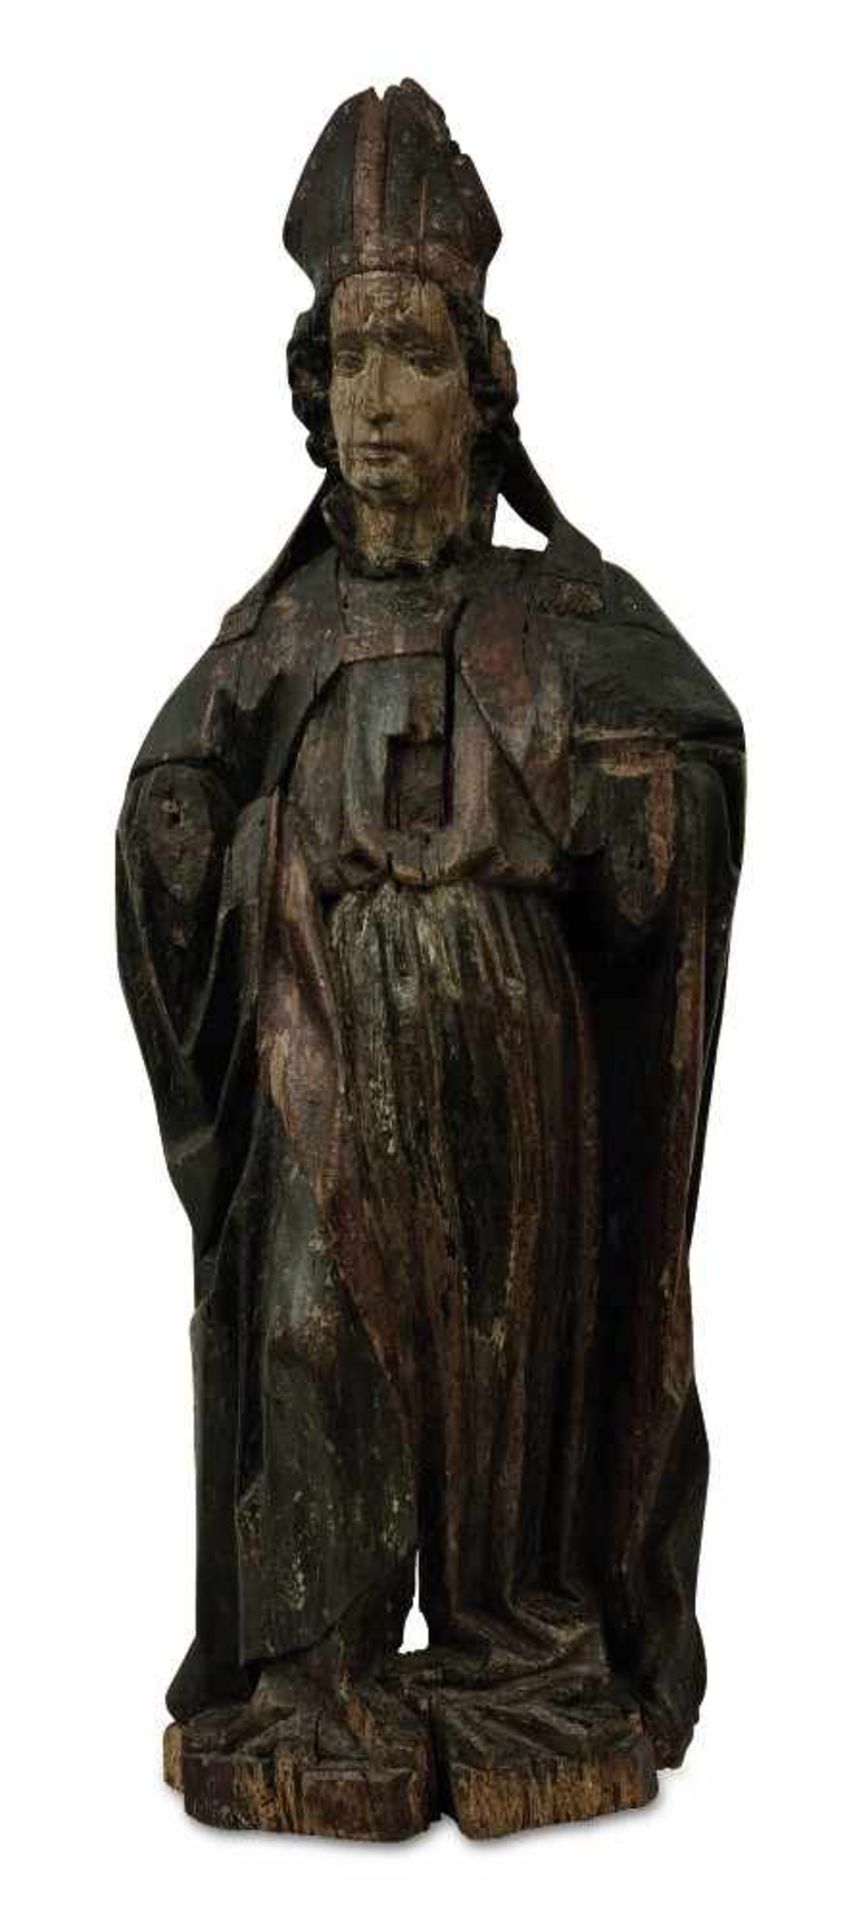 Hl. Bischof Niederbayern, um 1450 Holz, geschnitzt, rückseitig gehöhlt. Reste von Farbfassung.